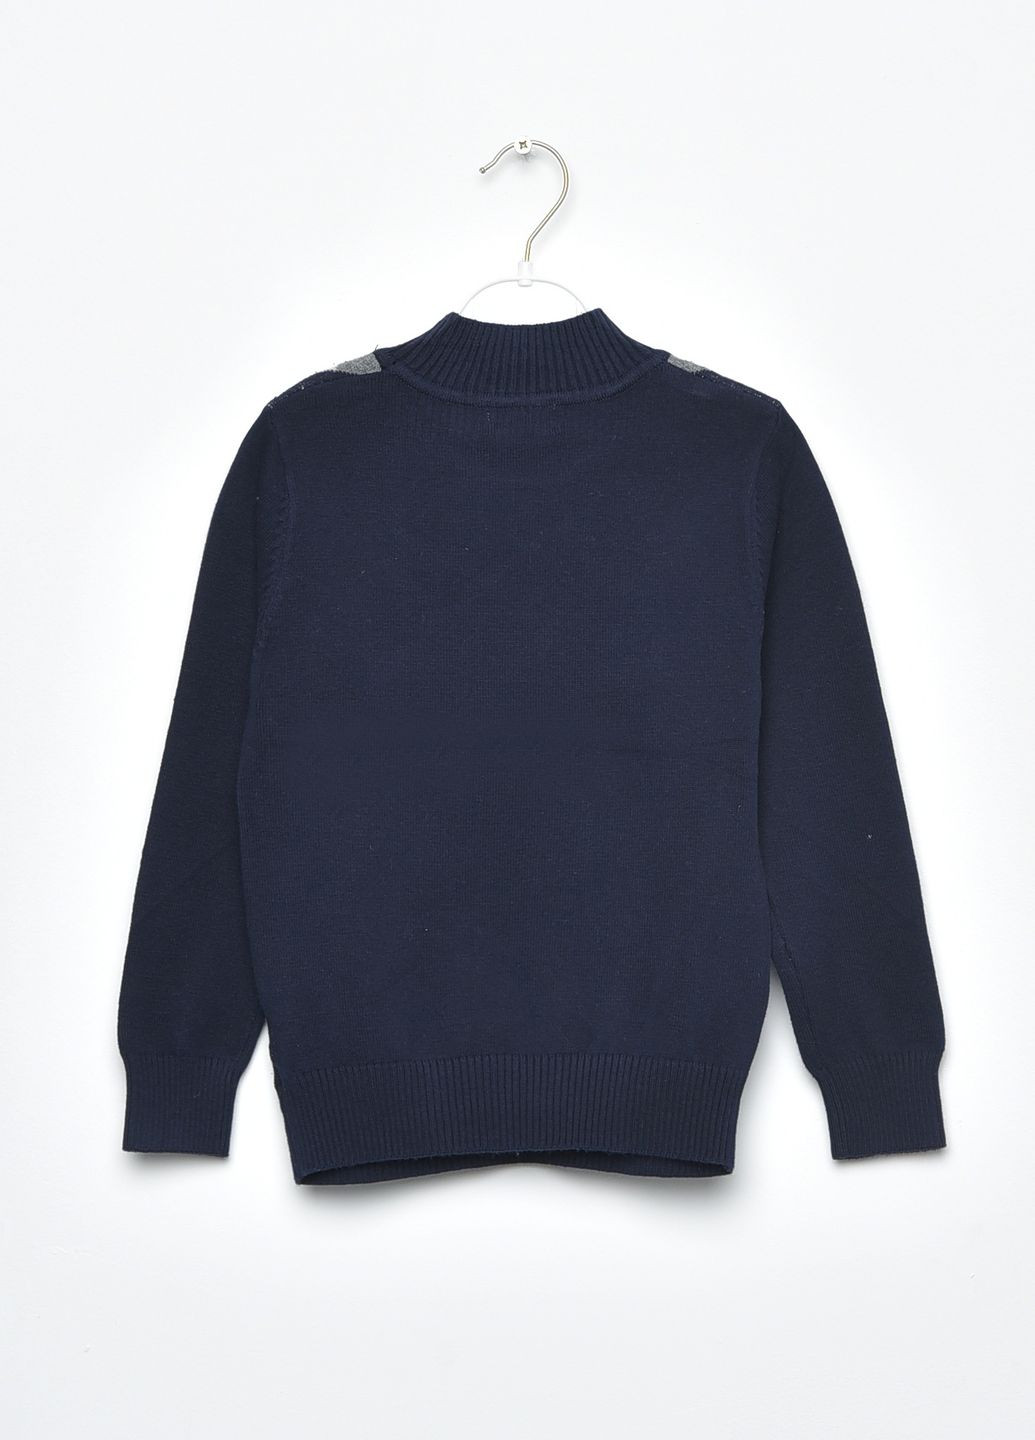 Черный демисезонный свитер детский для мальчика черного цвета в ромбик пуловер Let's Shop